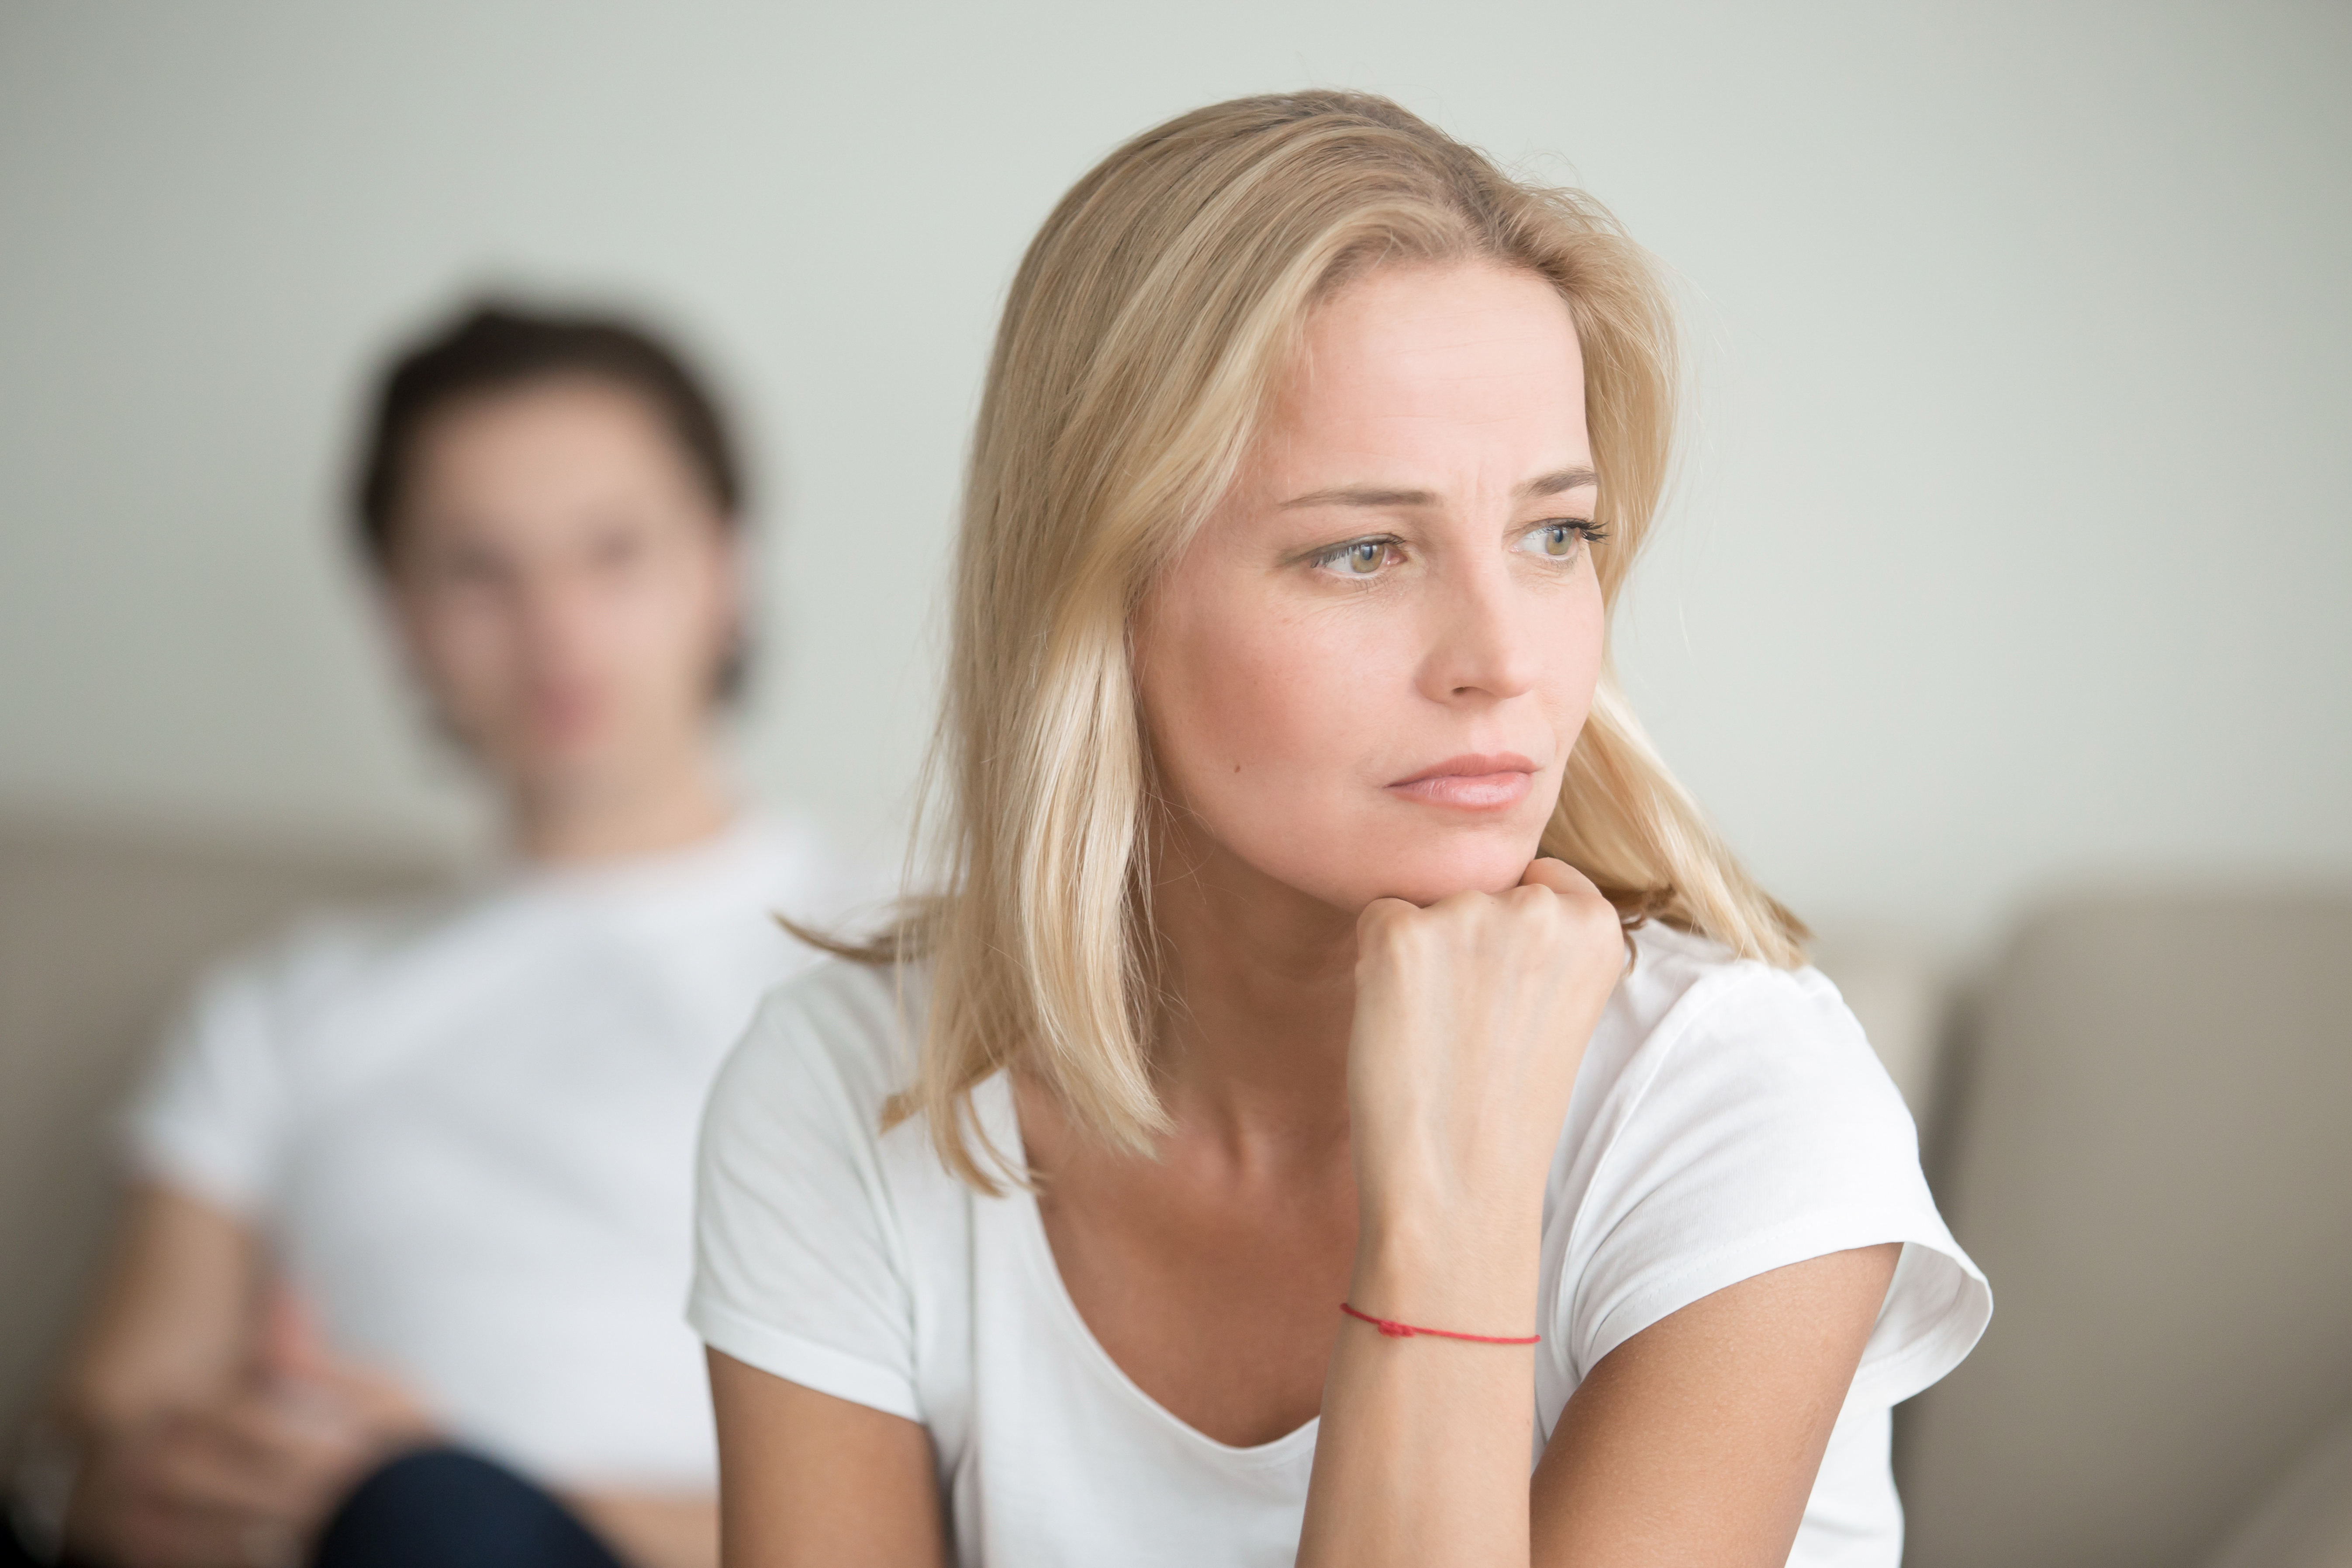 Una mujer sumida en la contemplación mientras otro hombre la observa desde atrás | Fuente: Shutterstock